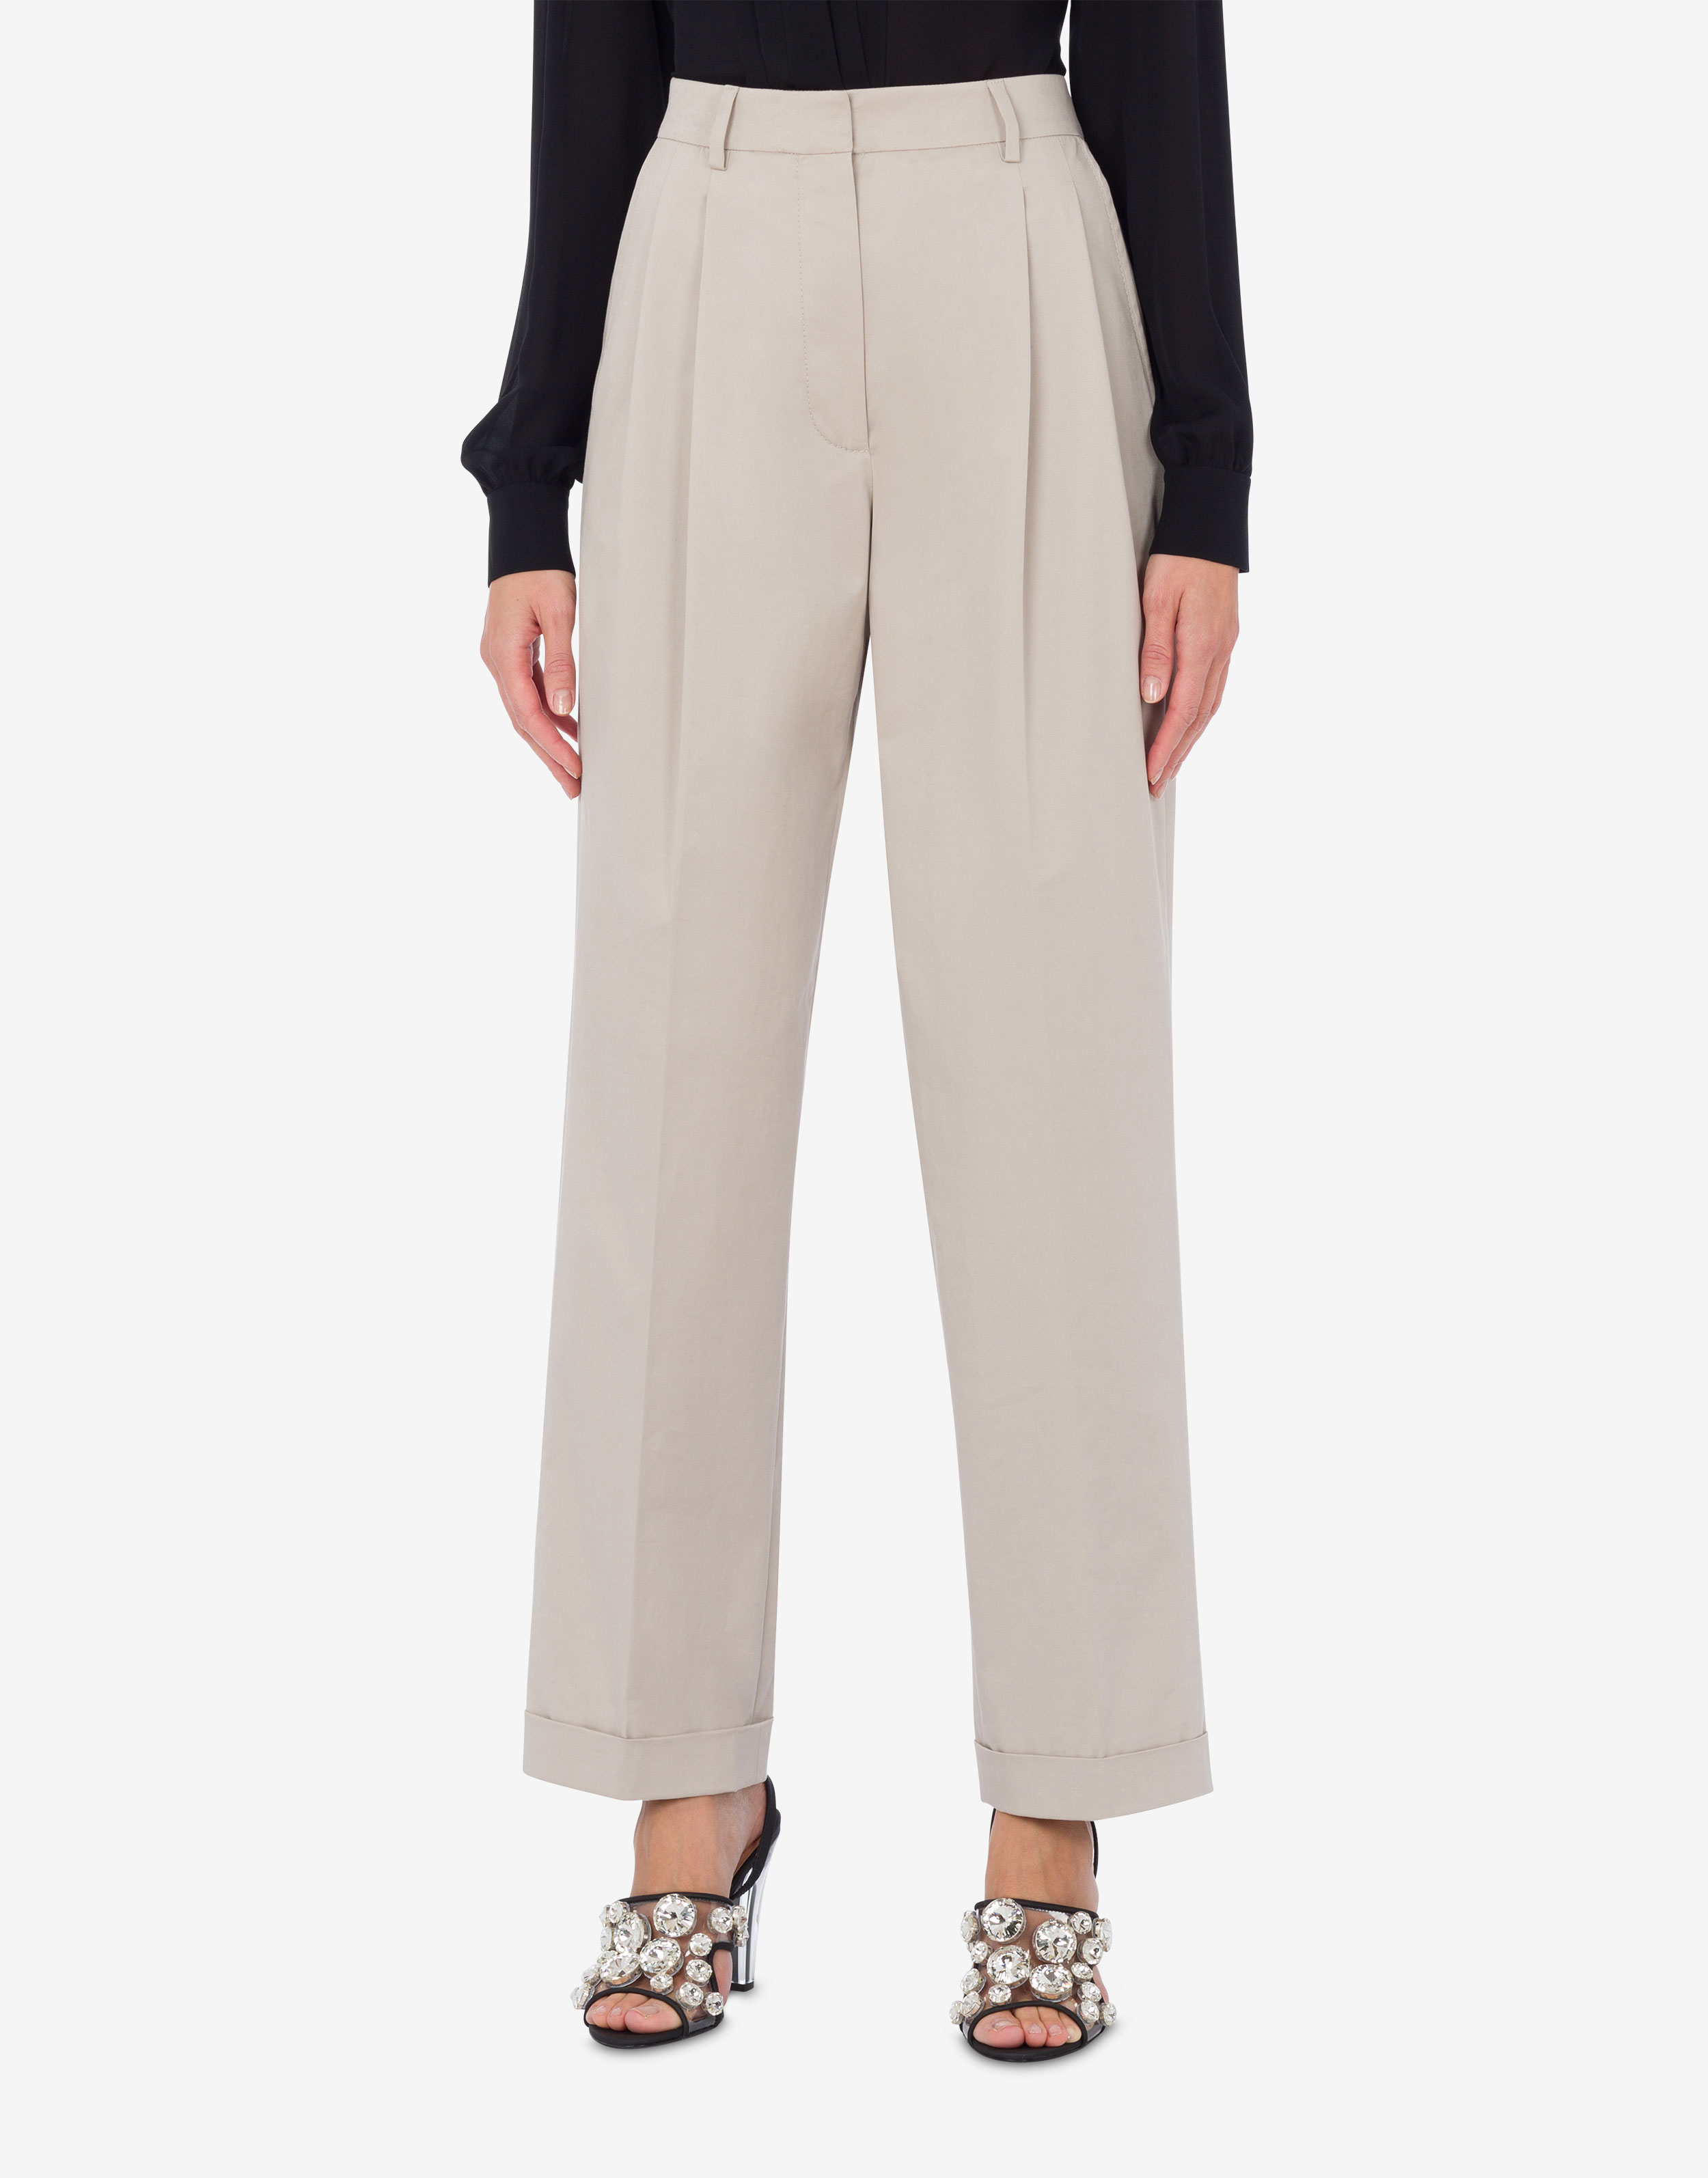 Moschino women's capri trousers